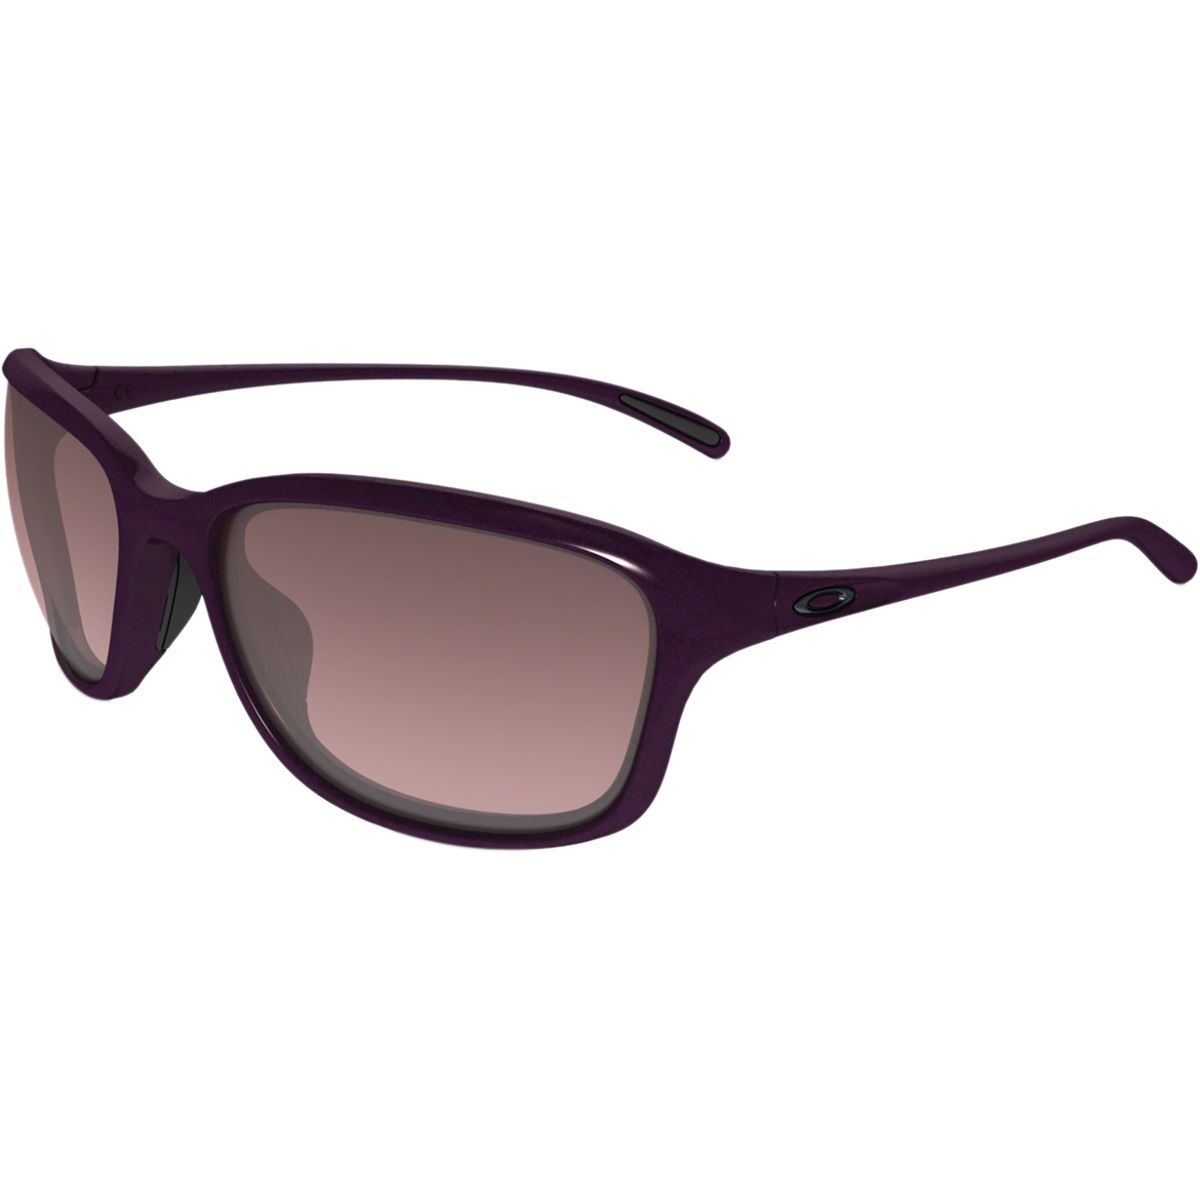 Oakley She's Unstoppable Sunglasses - Women's - Accessories